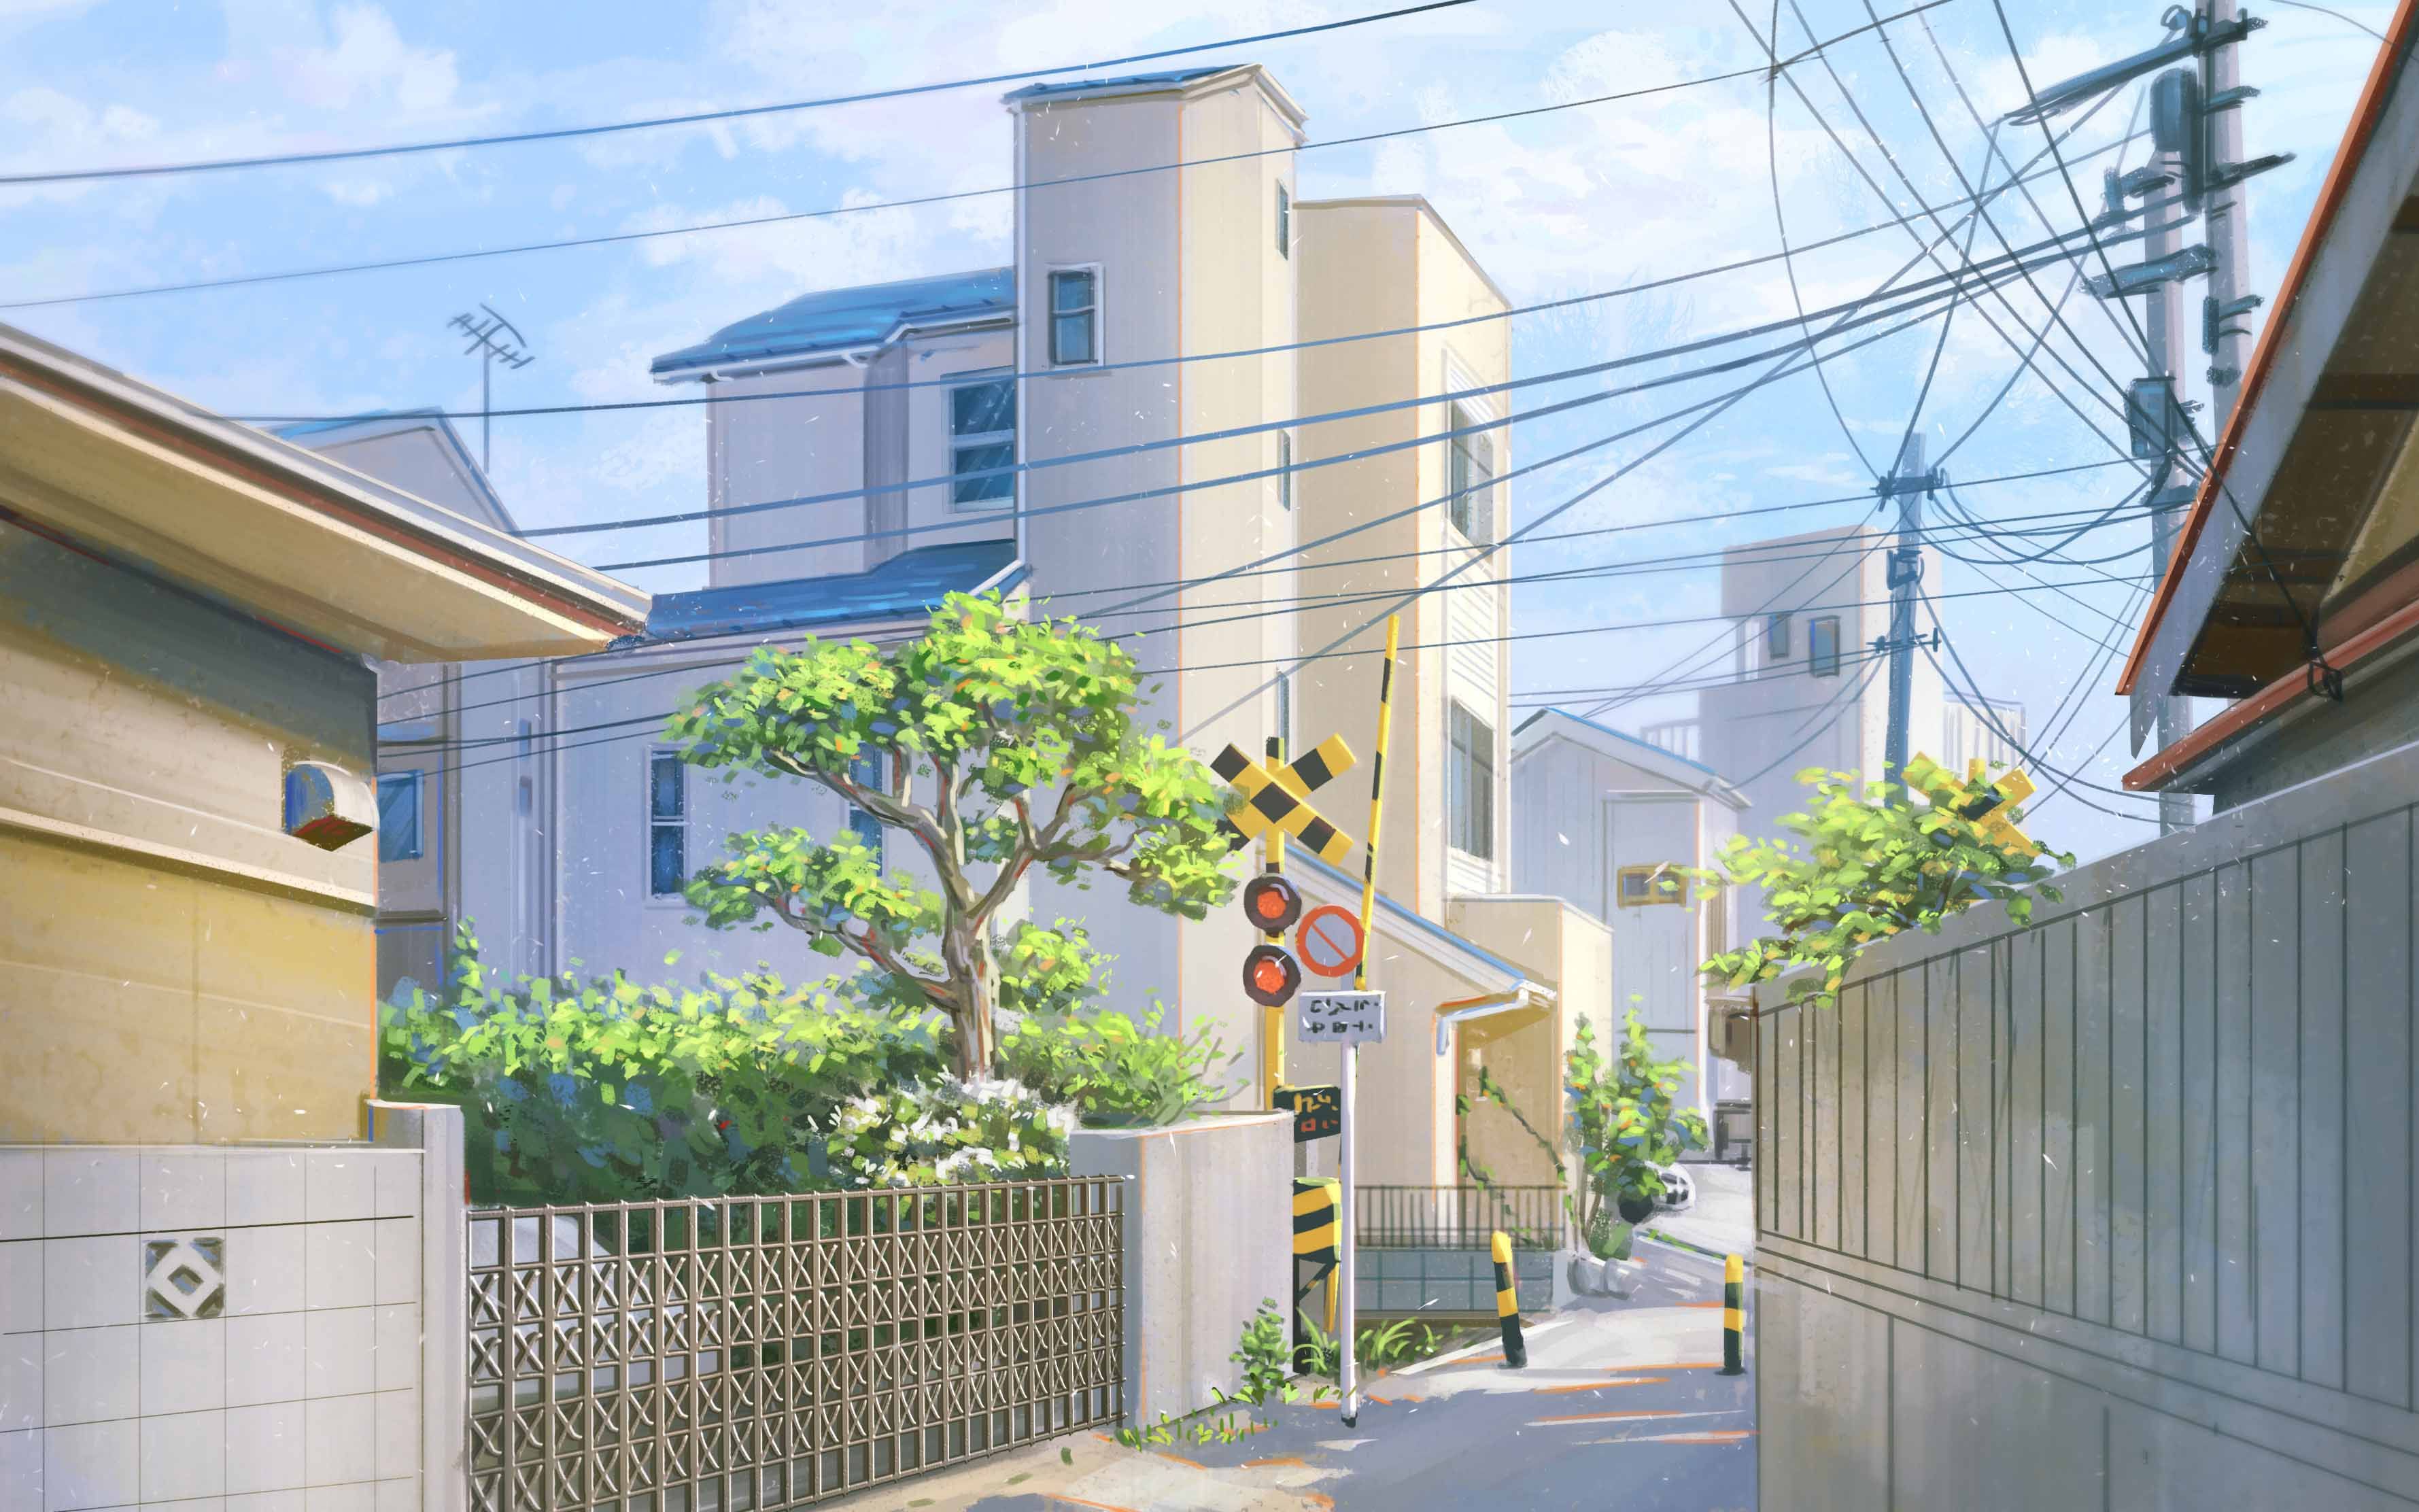 日本动漫街景高清图片